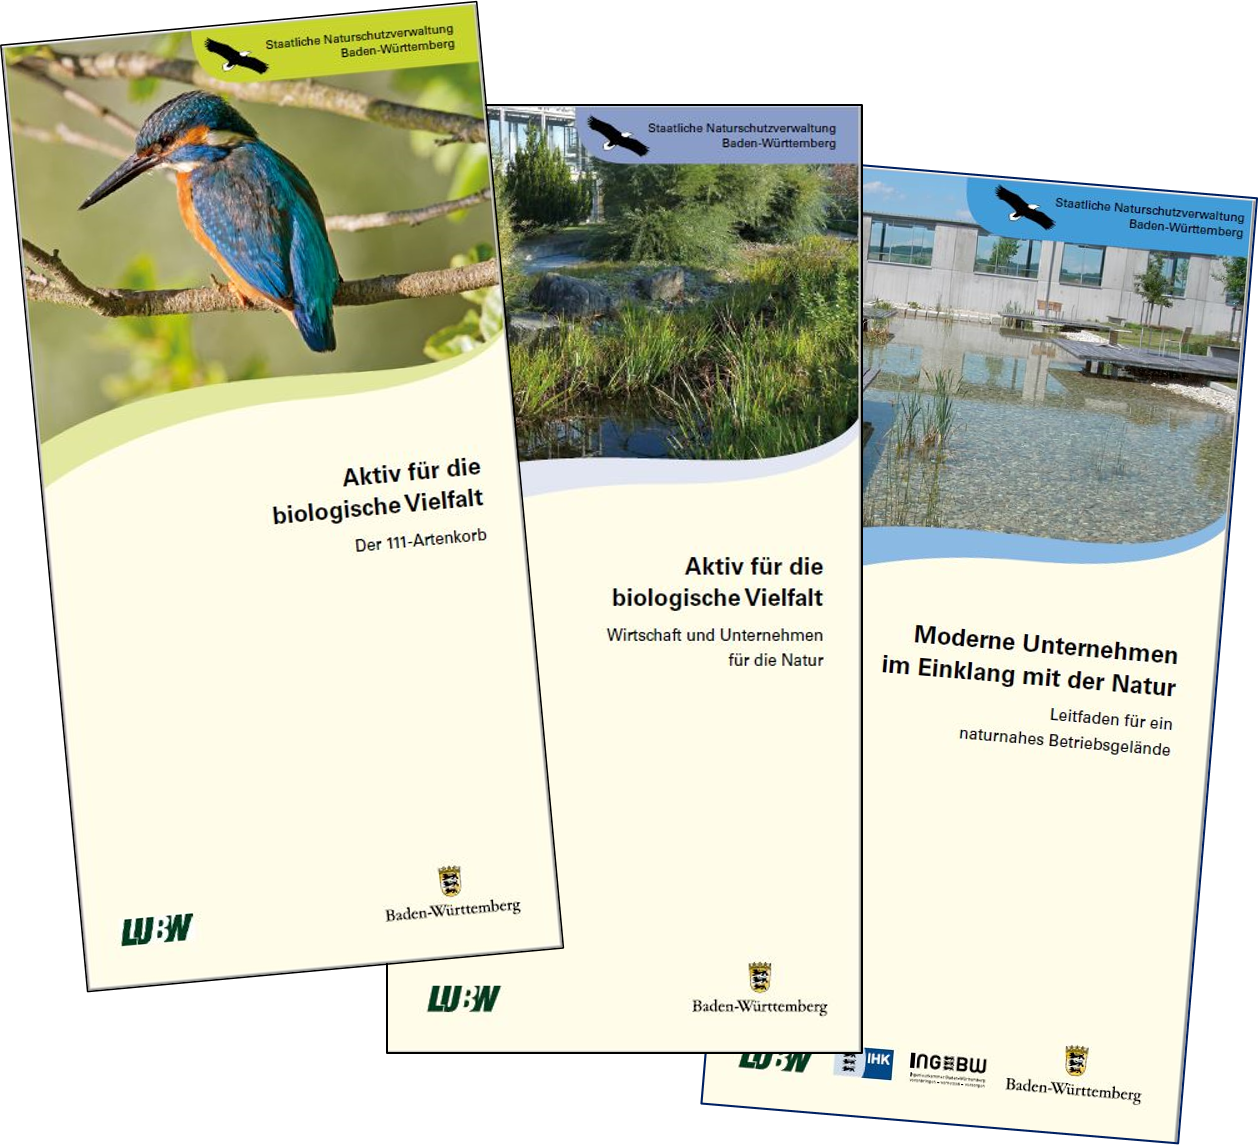 Bild zeigt drei Flyercover: von links nach rechts "Der 111-Artenkorb", "Wirtschaft und Unternehmen für die Natur" und "Moderne Unternehmen im Einklang mit der Natur"